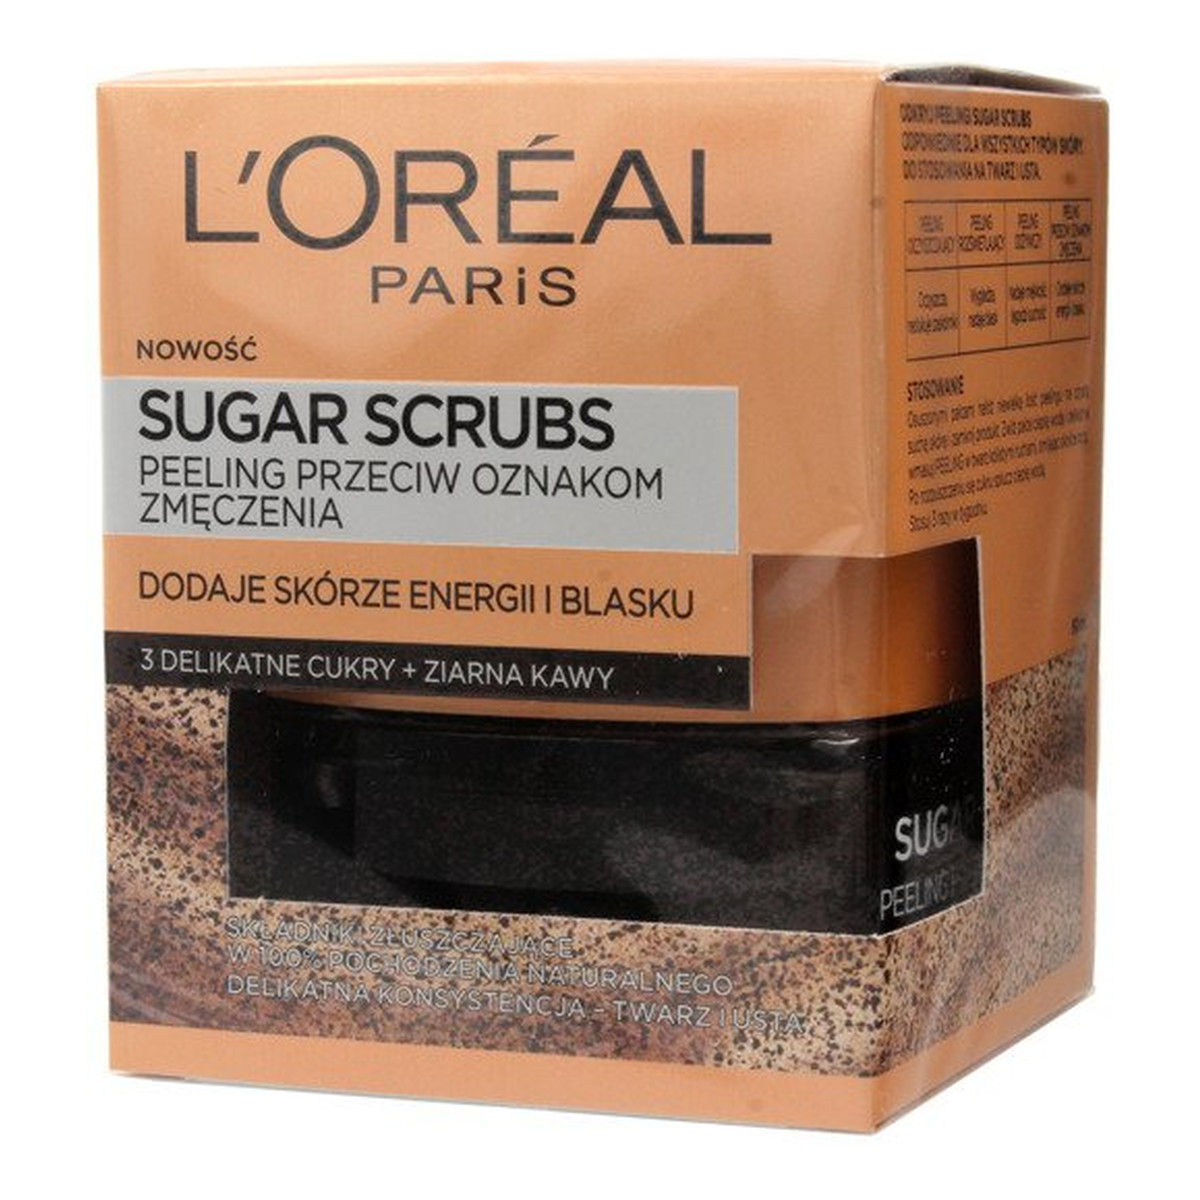 L'Oreal Paris Sugar Scrubs Peeling do twarzy przeciw oznakom zmęczenia 3 cukry+ziarna kawy 50ml